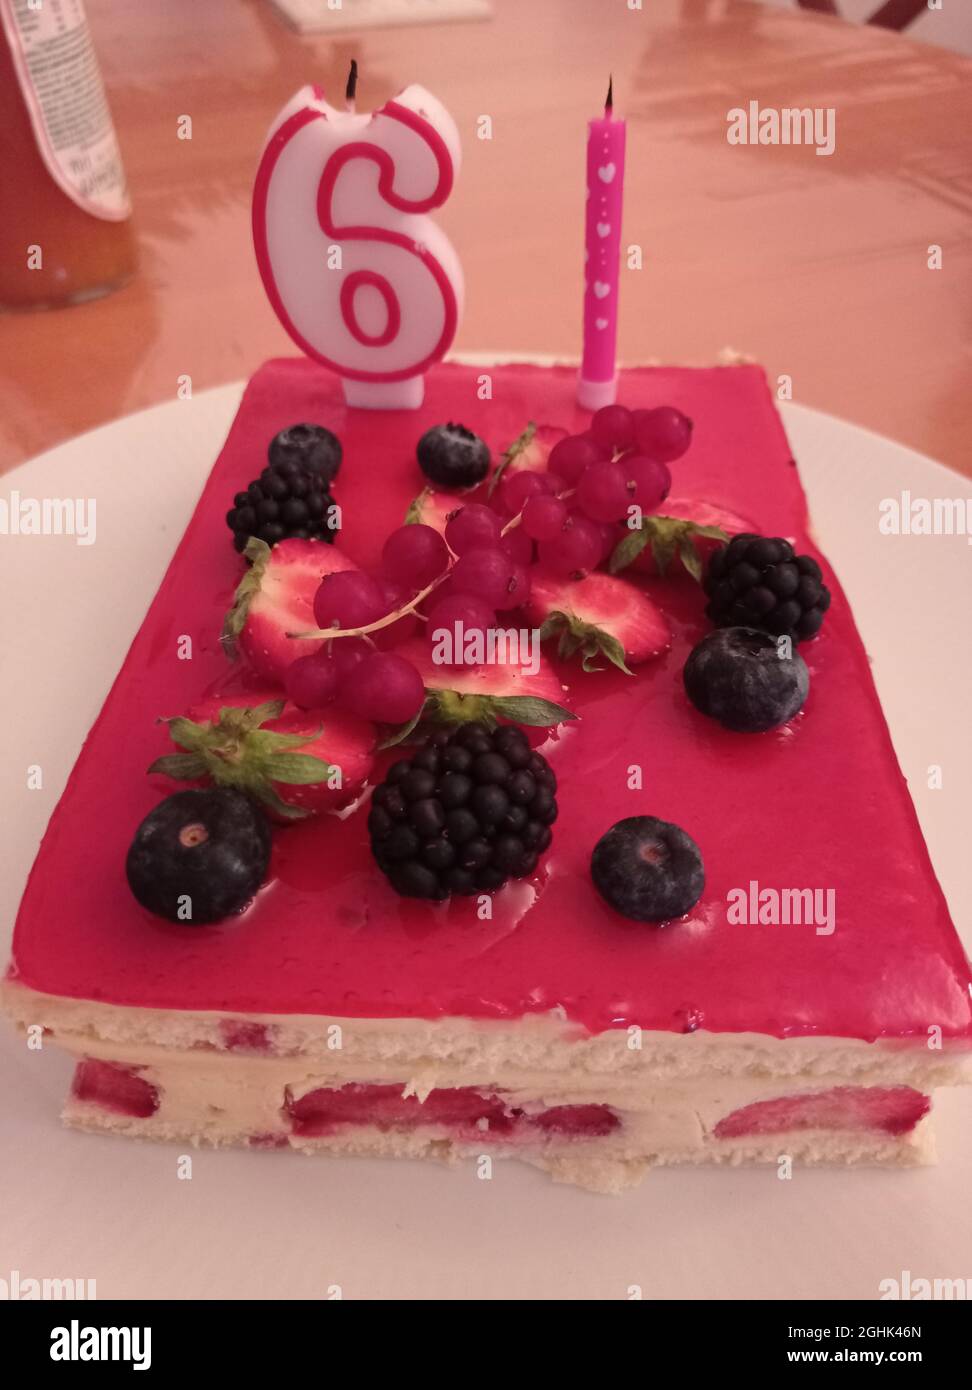 gâteau d'anniversaire pour 61 ans , un framboisier, France. Foto Stock